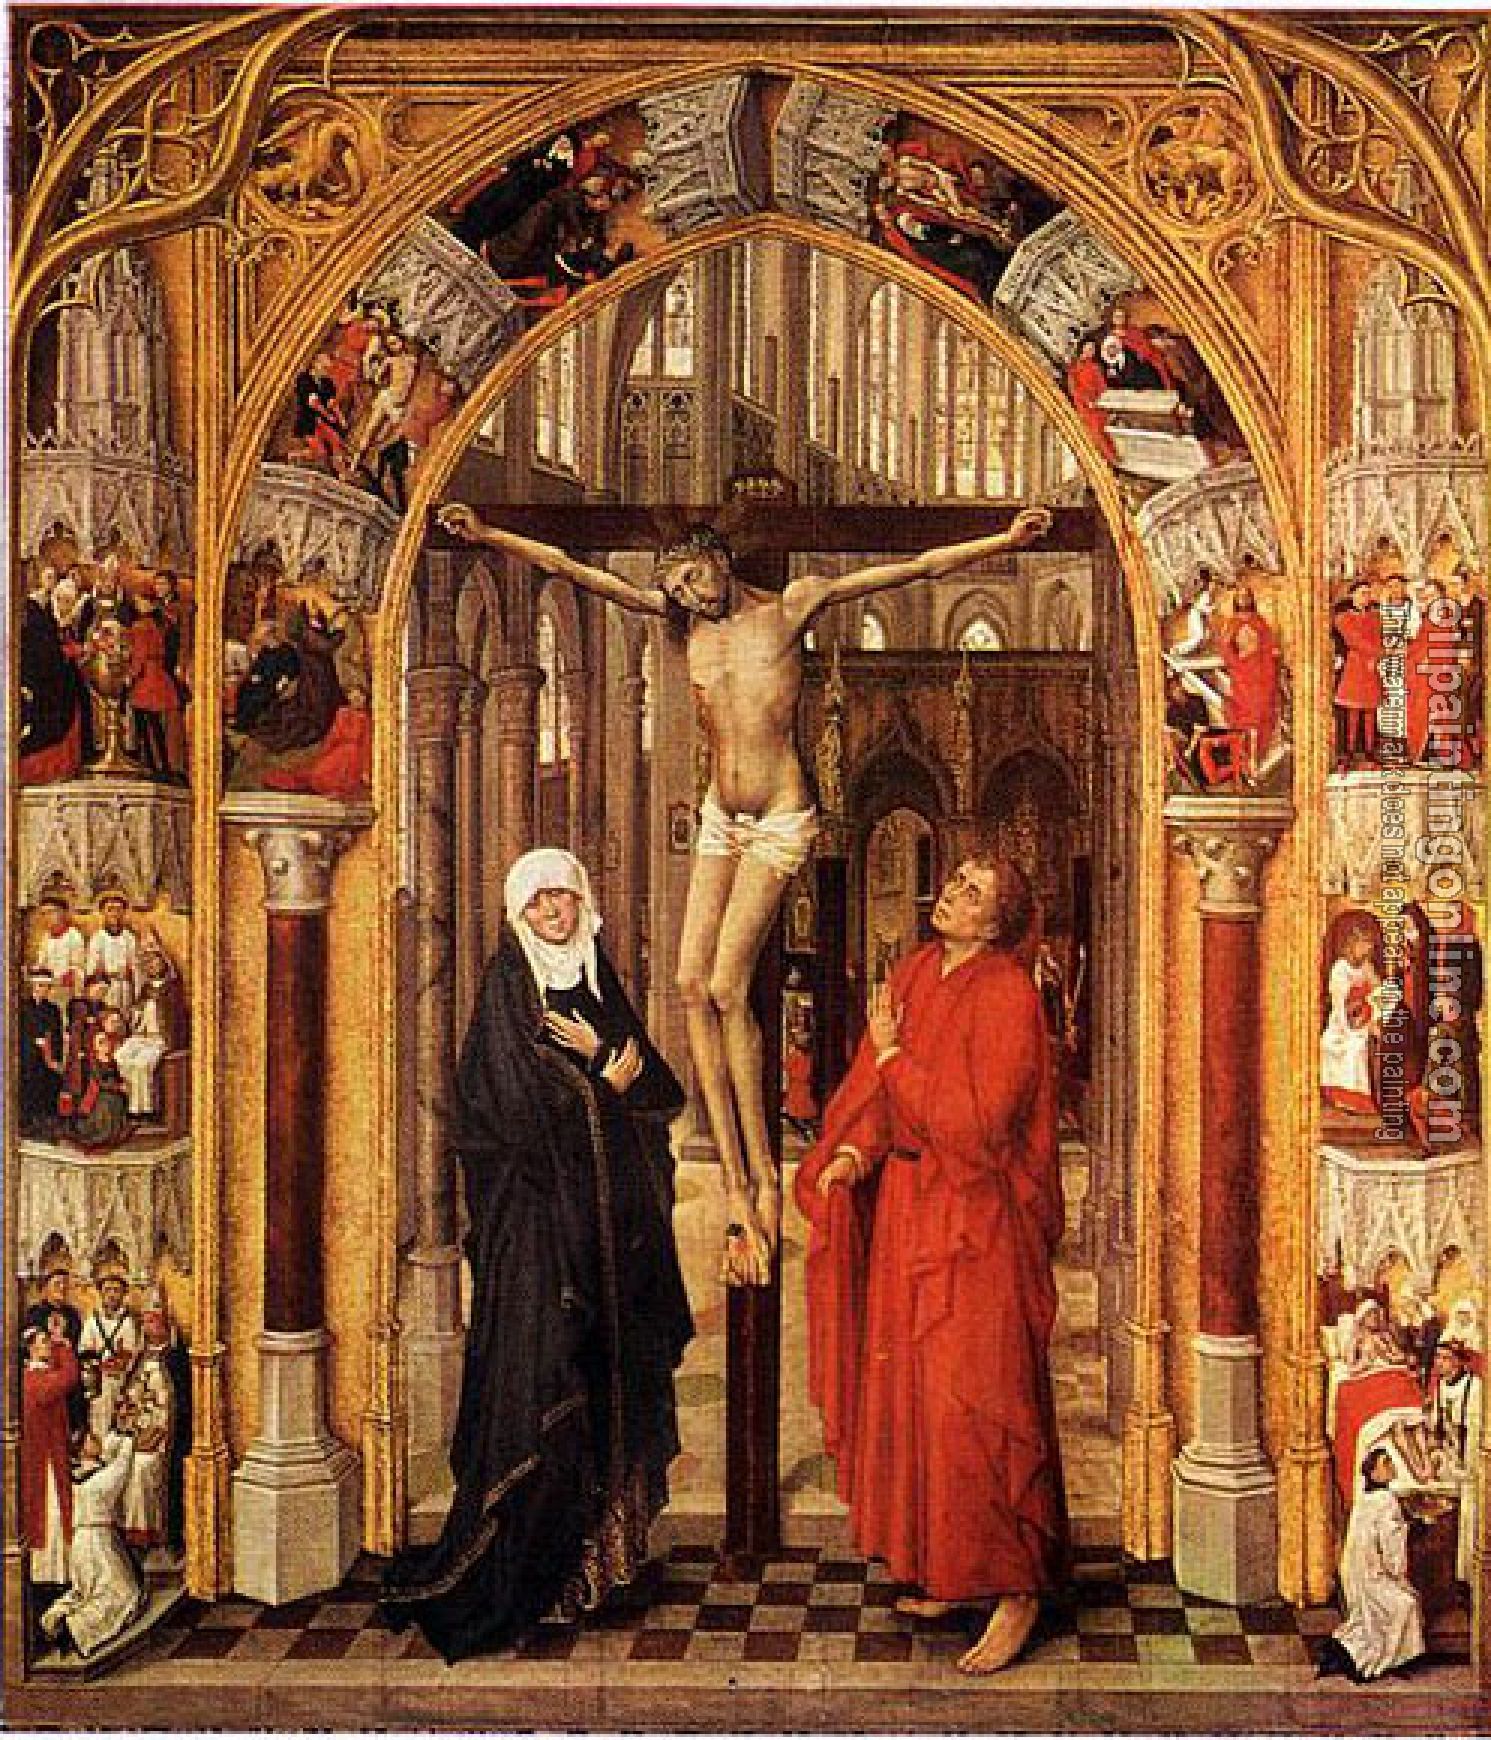 Weyden, Rogier van der - Triptych of the Redemption-central